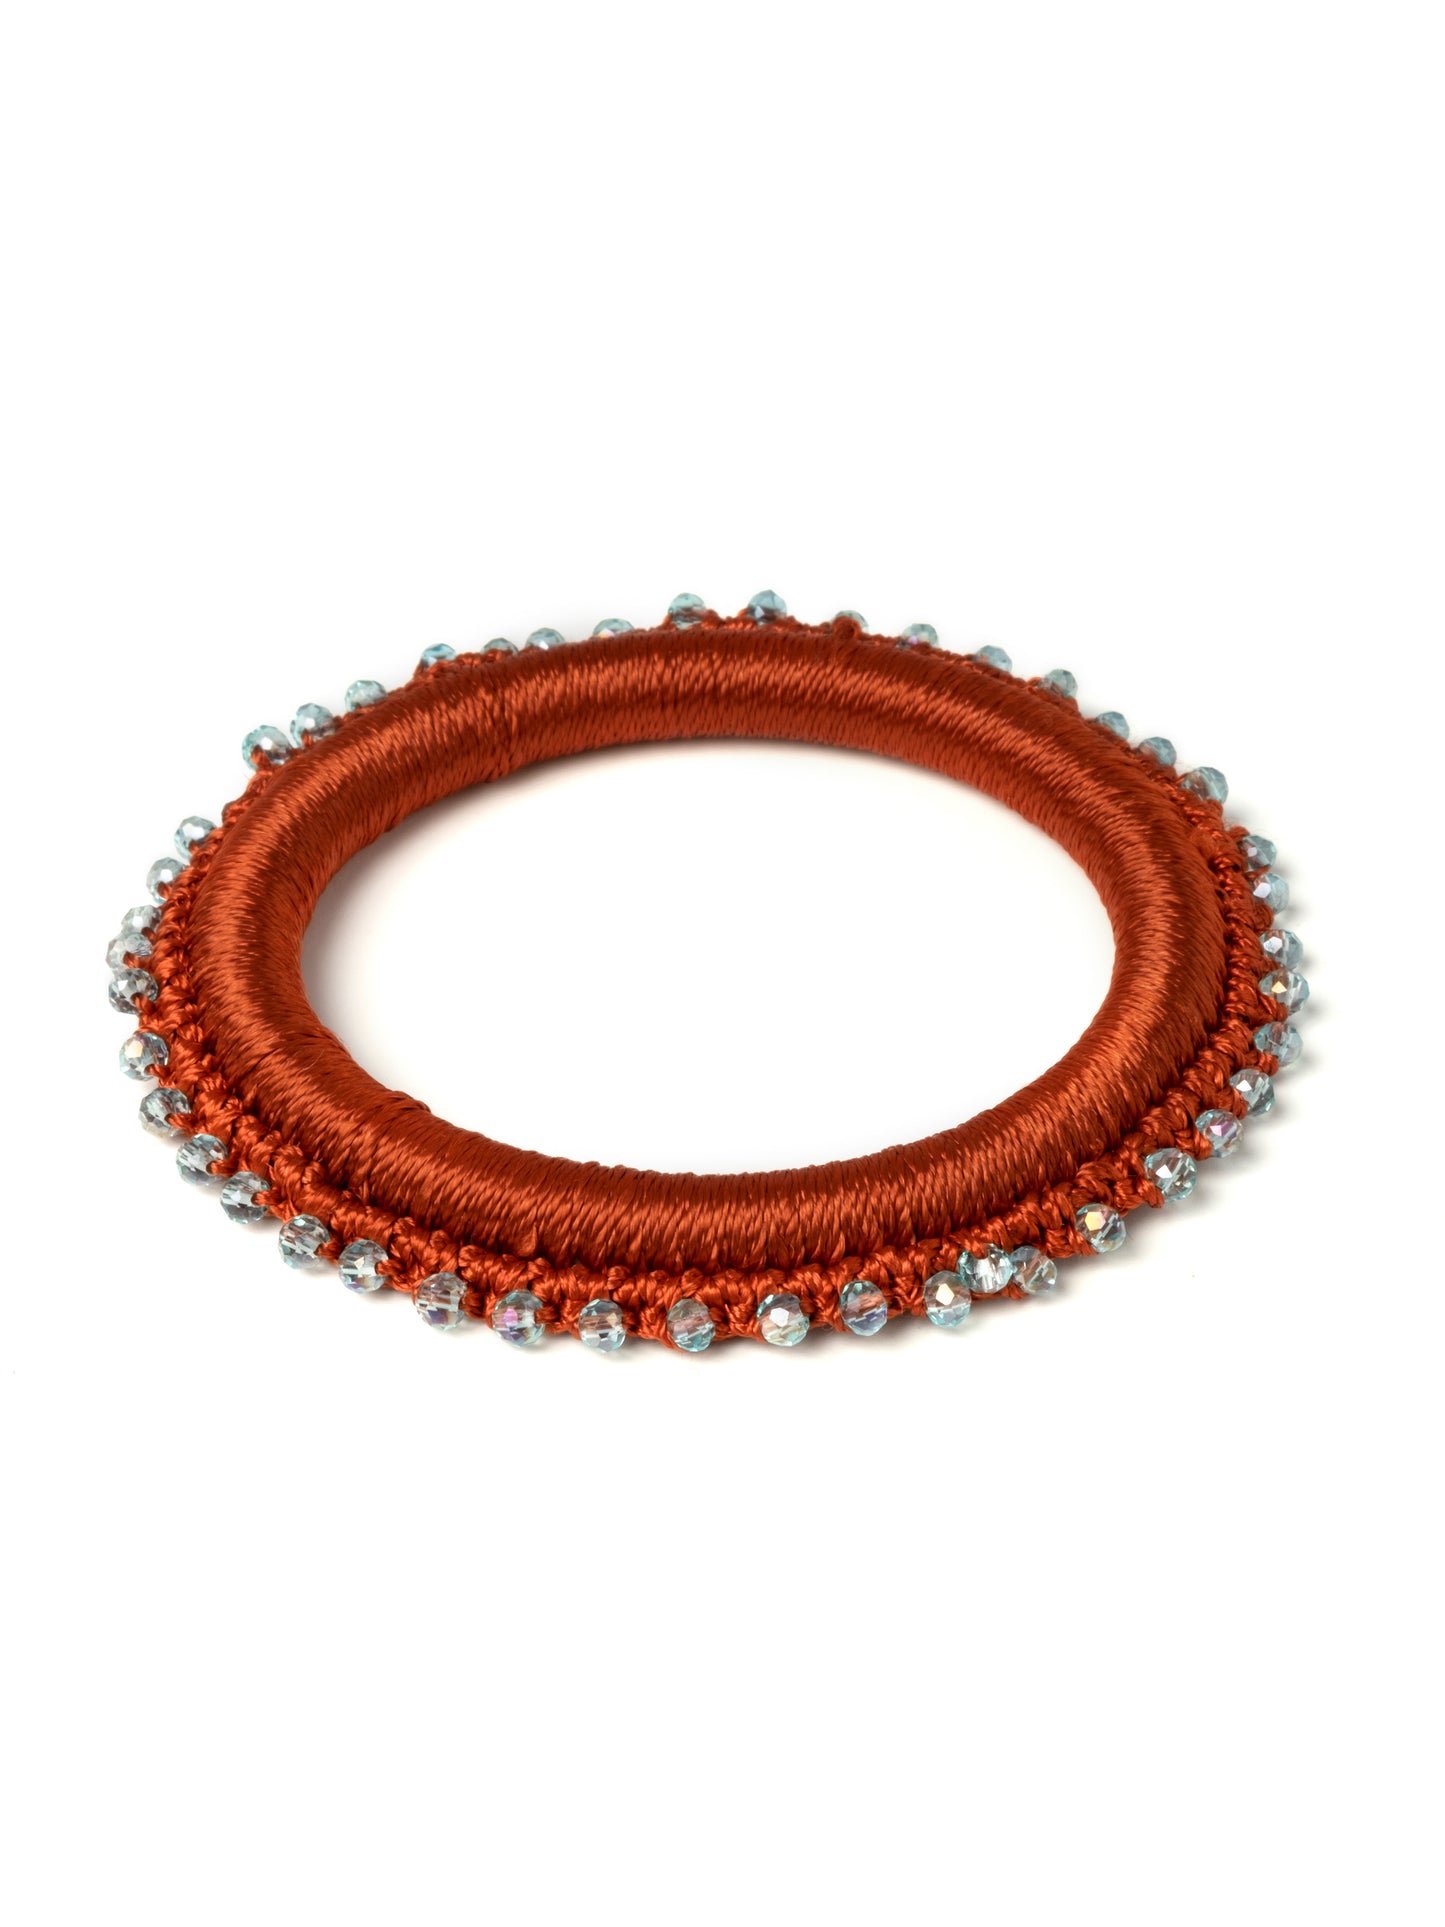 Beaded Crochet Bangle Bracelet